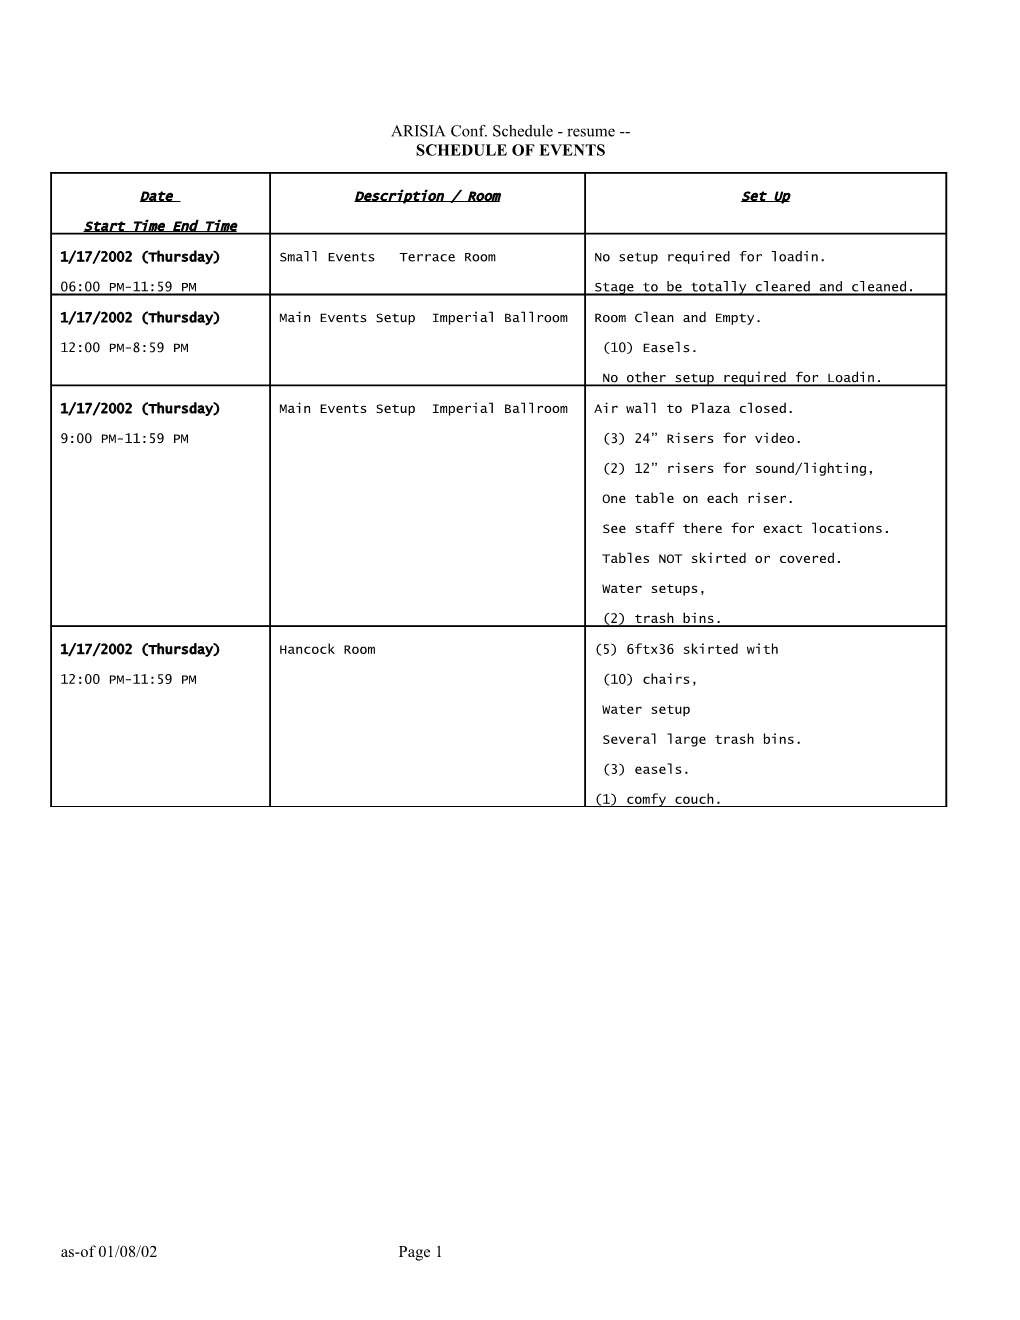 ARISIA Conf. Schedule - Resume